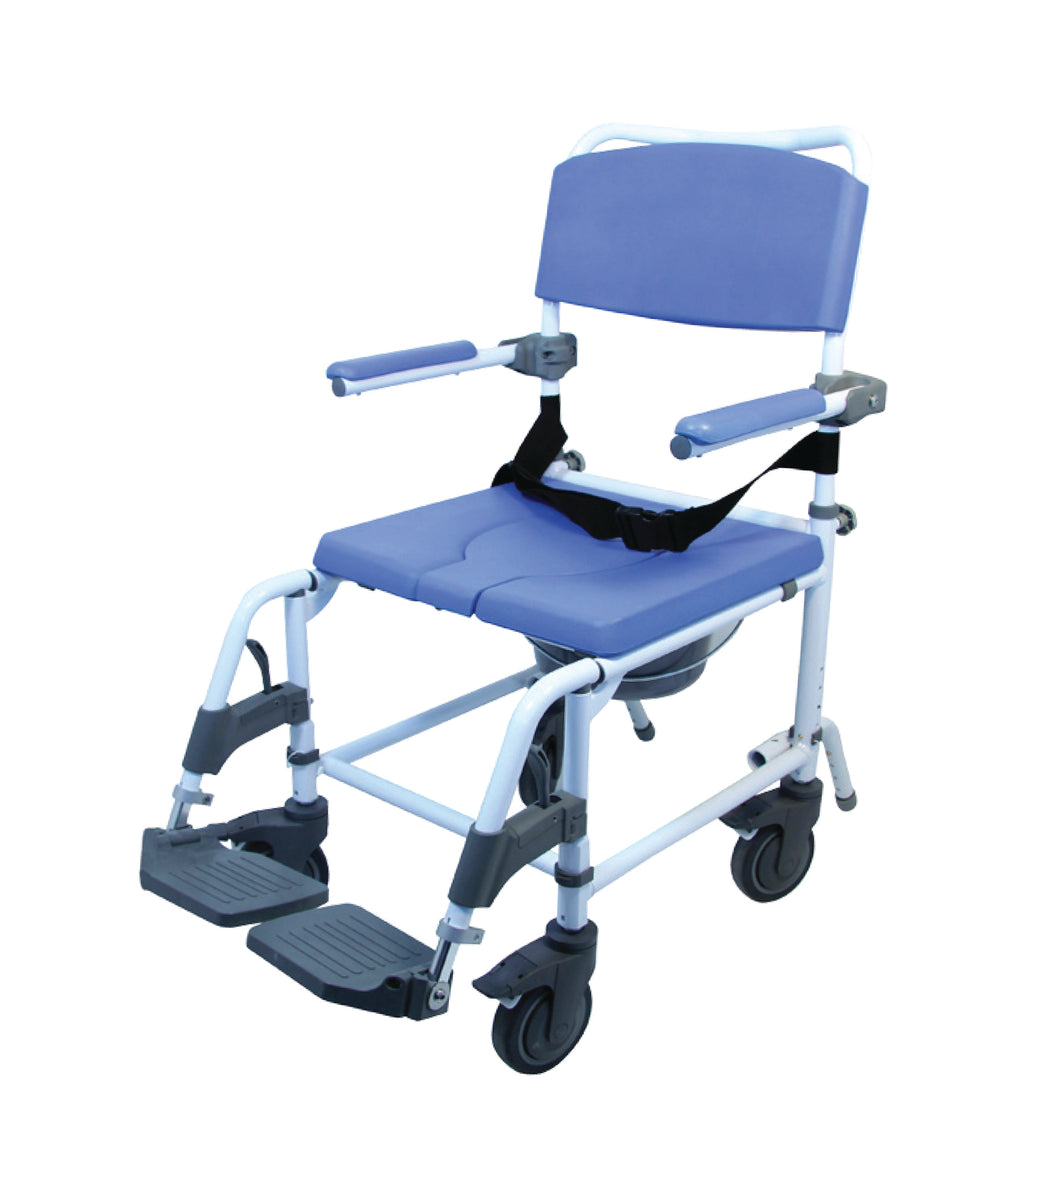 Chaise d'aisance, assise de 20 po / 51 cm – BIOS Medical